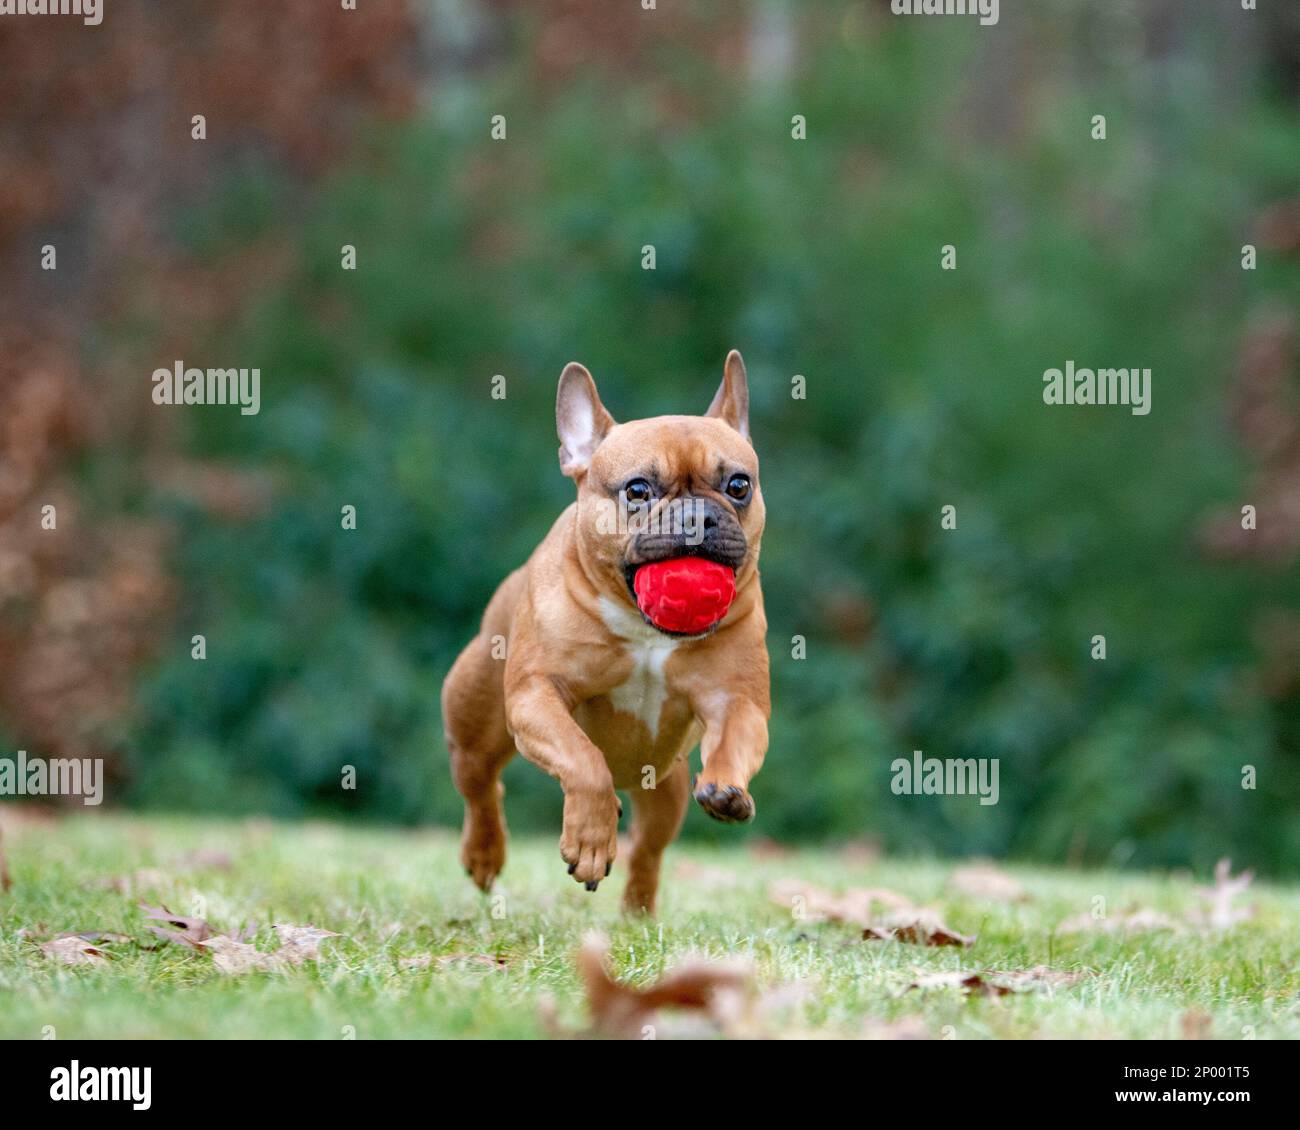 Roter französischer Bulldogge rennt auf dem Gras mit rotem Ball im Mund. Stockfoto